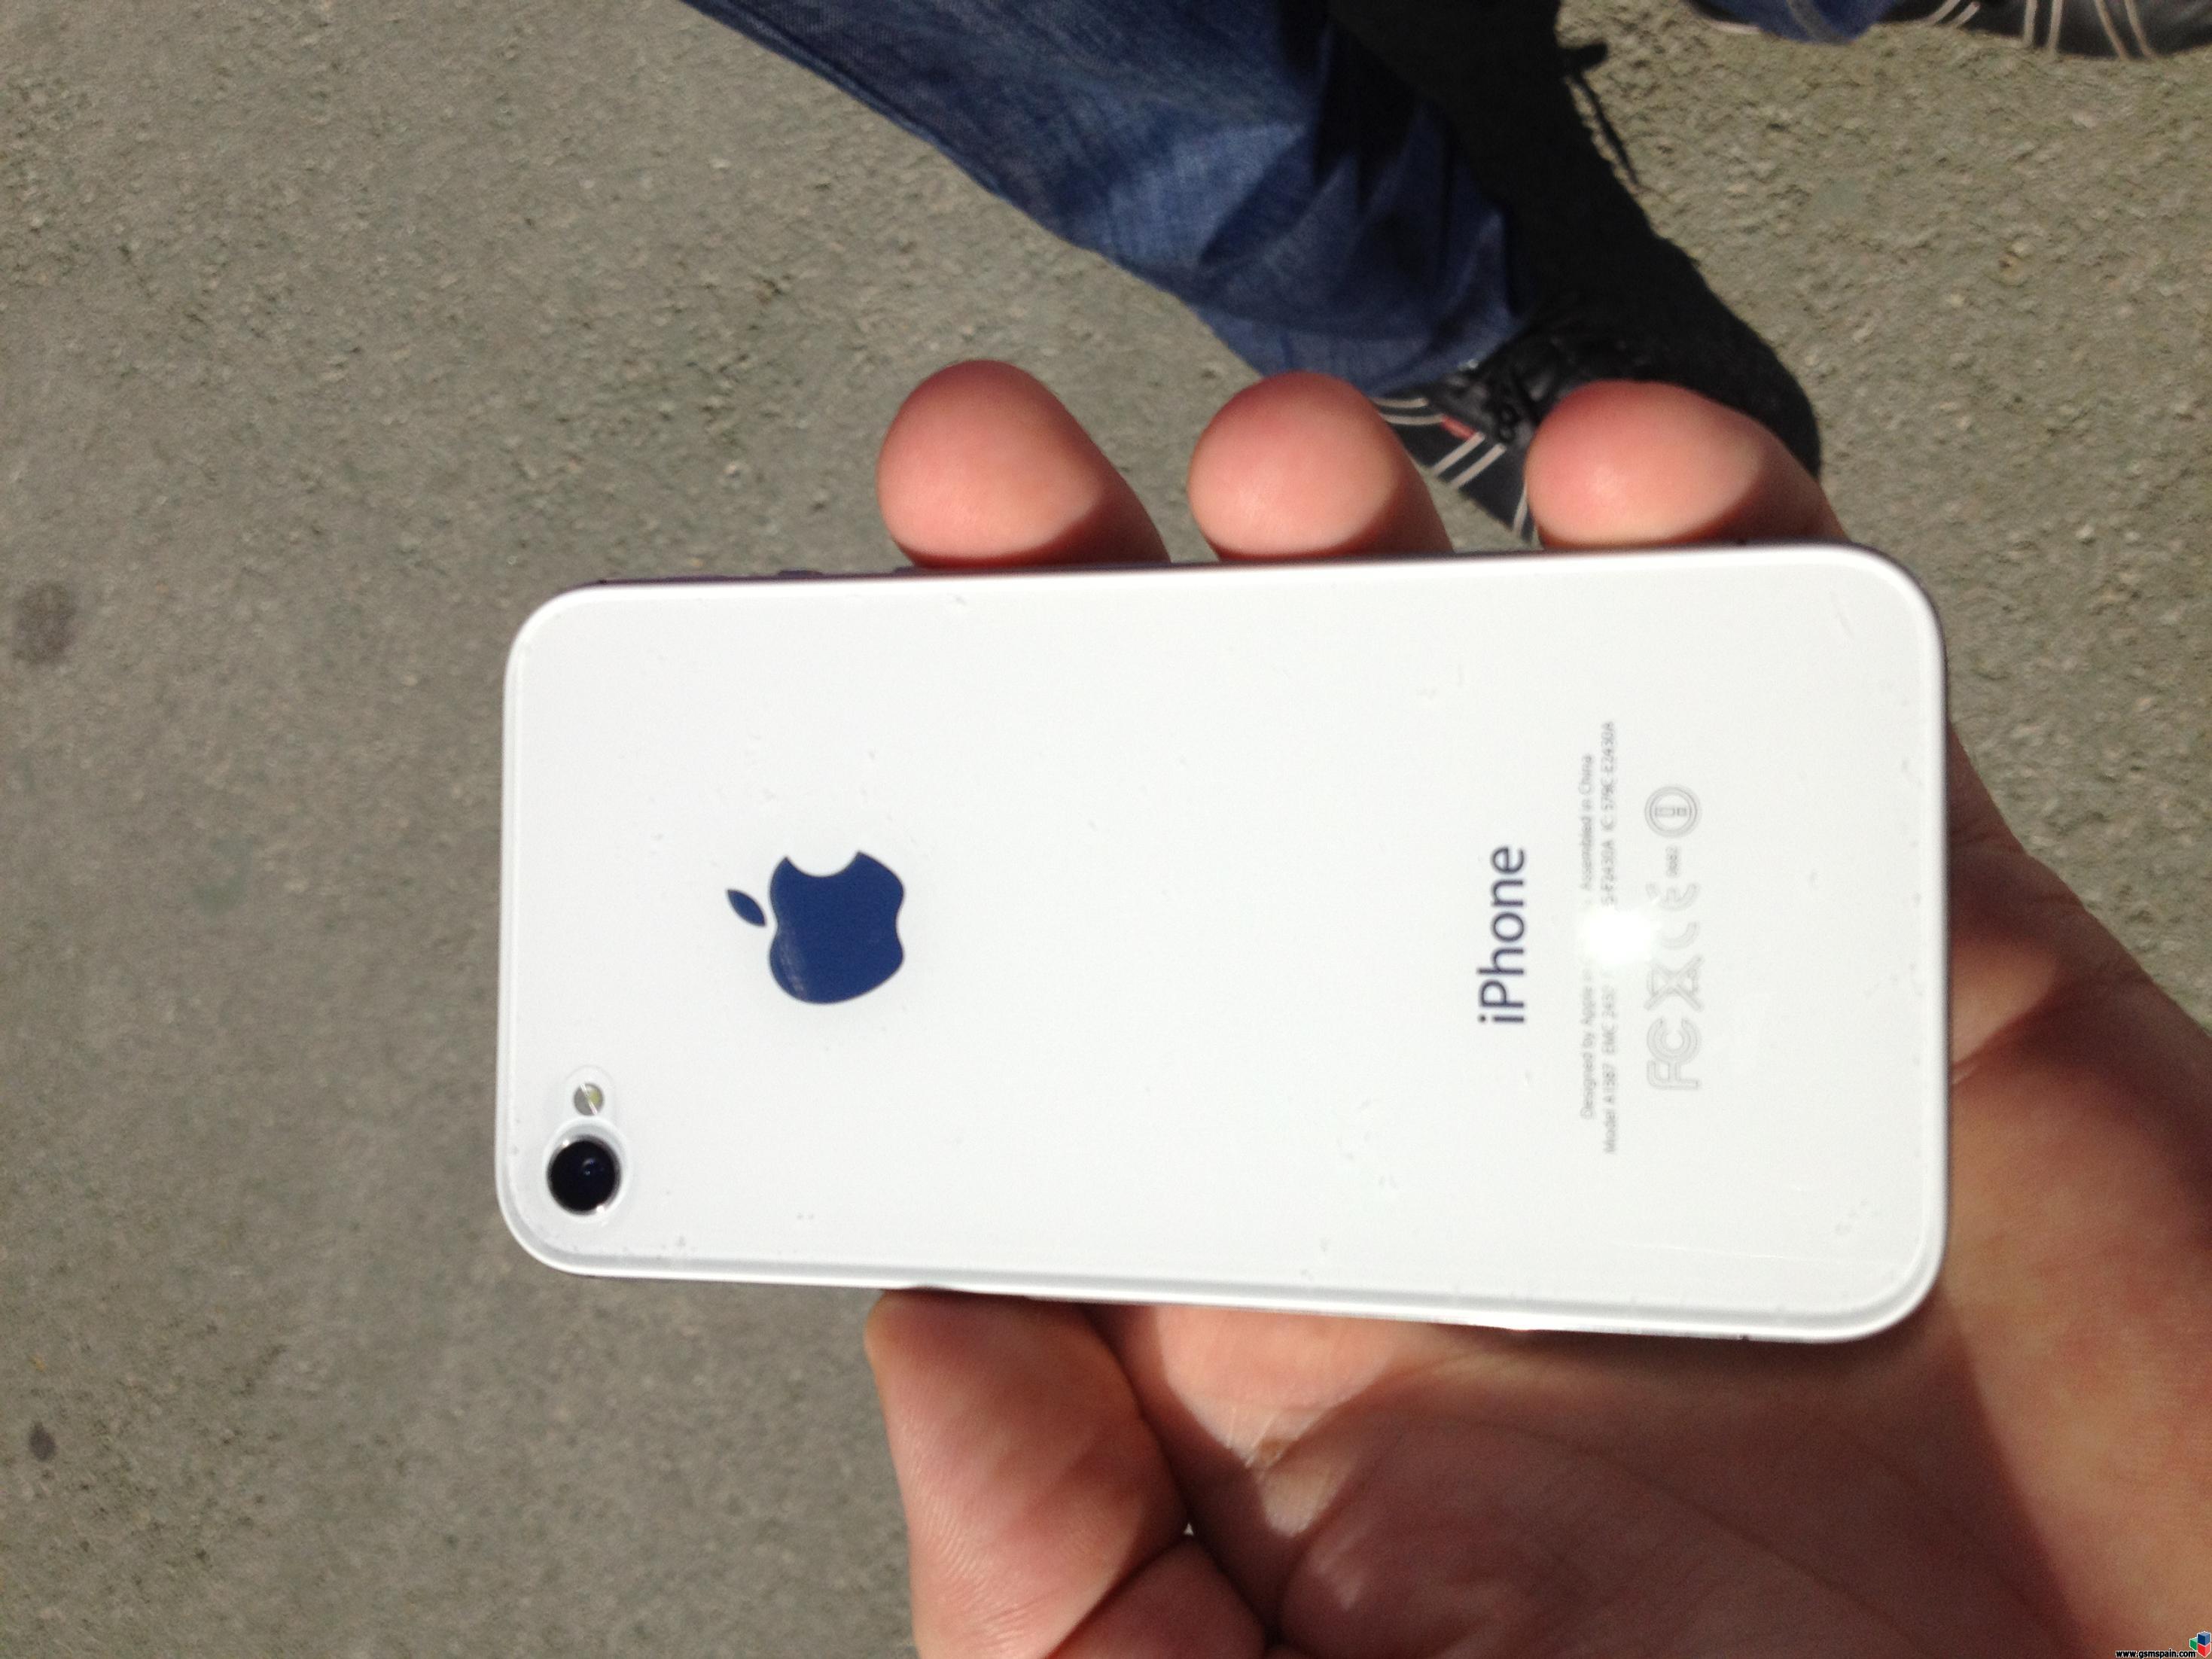 [VENDO] iPhone 4s 64gb blanco libre impecable (cambio de apple) con garanta de apple